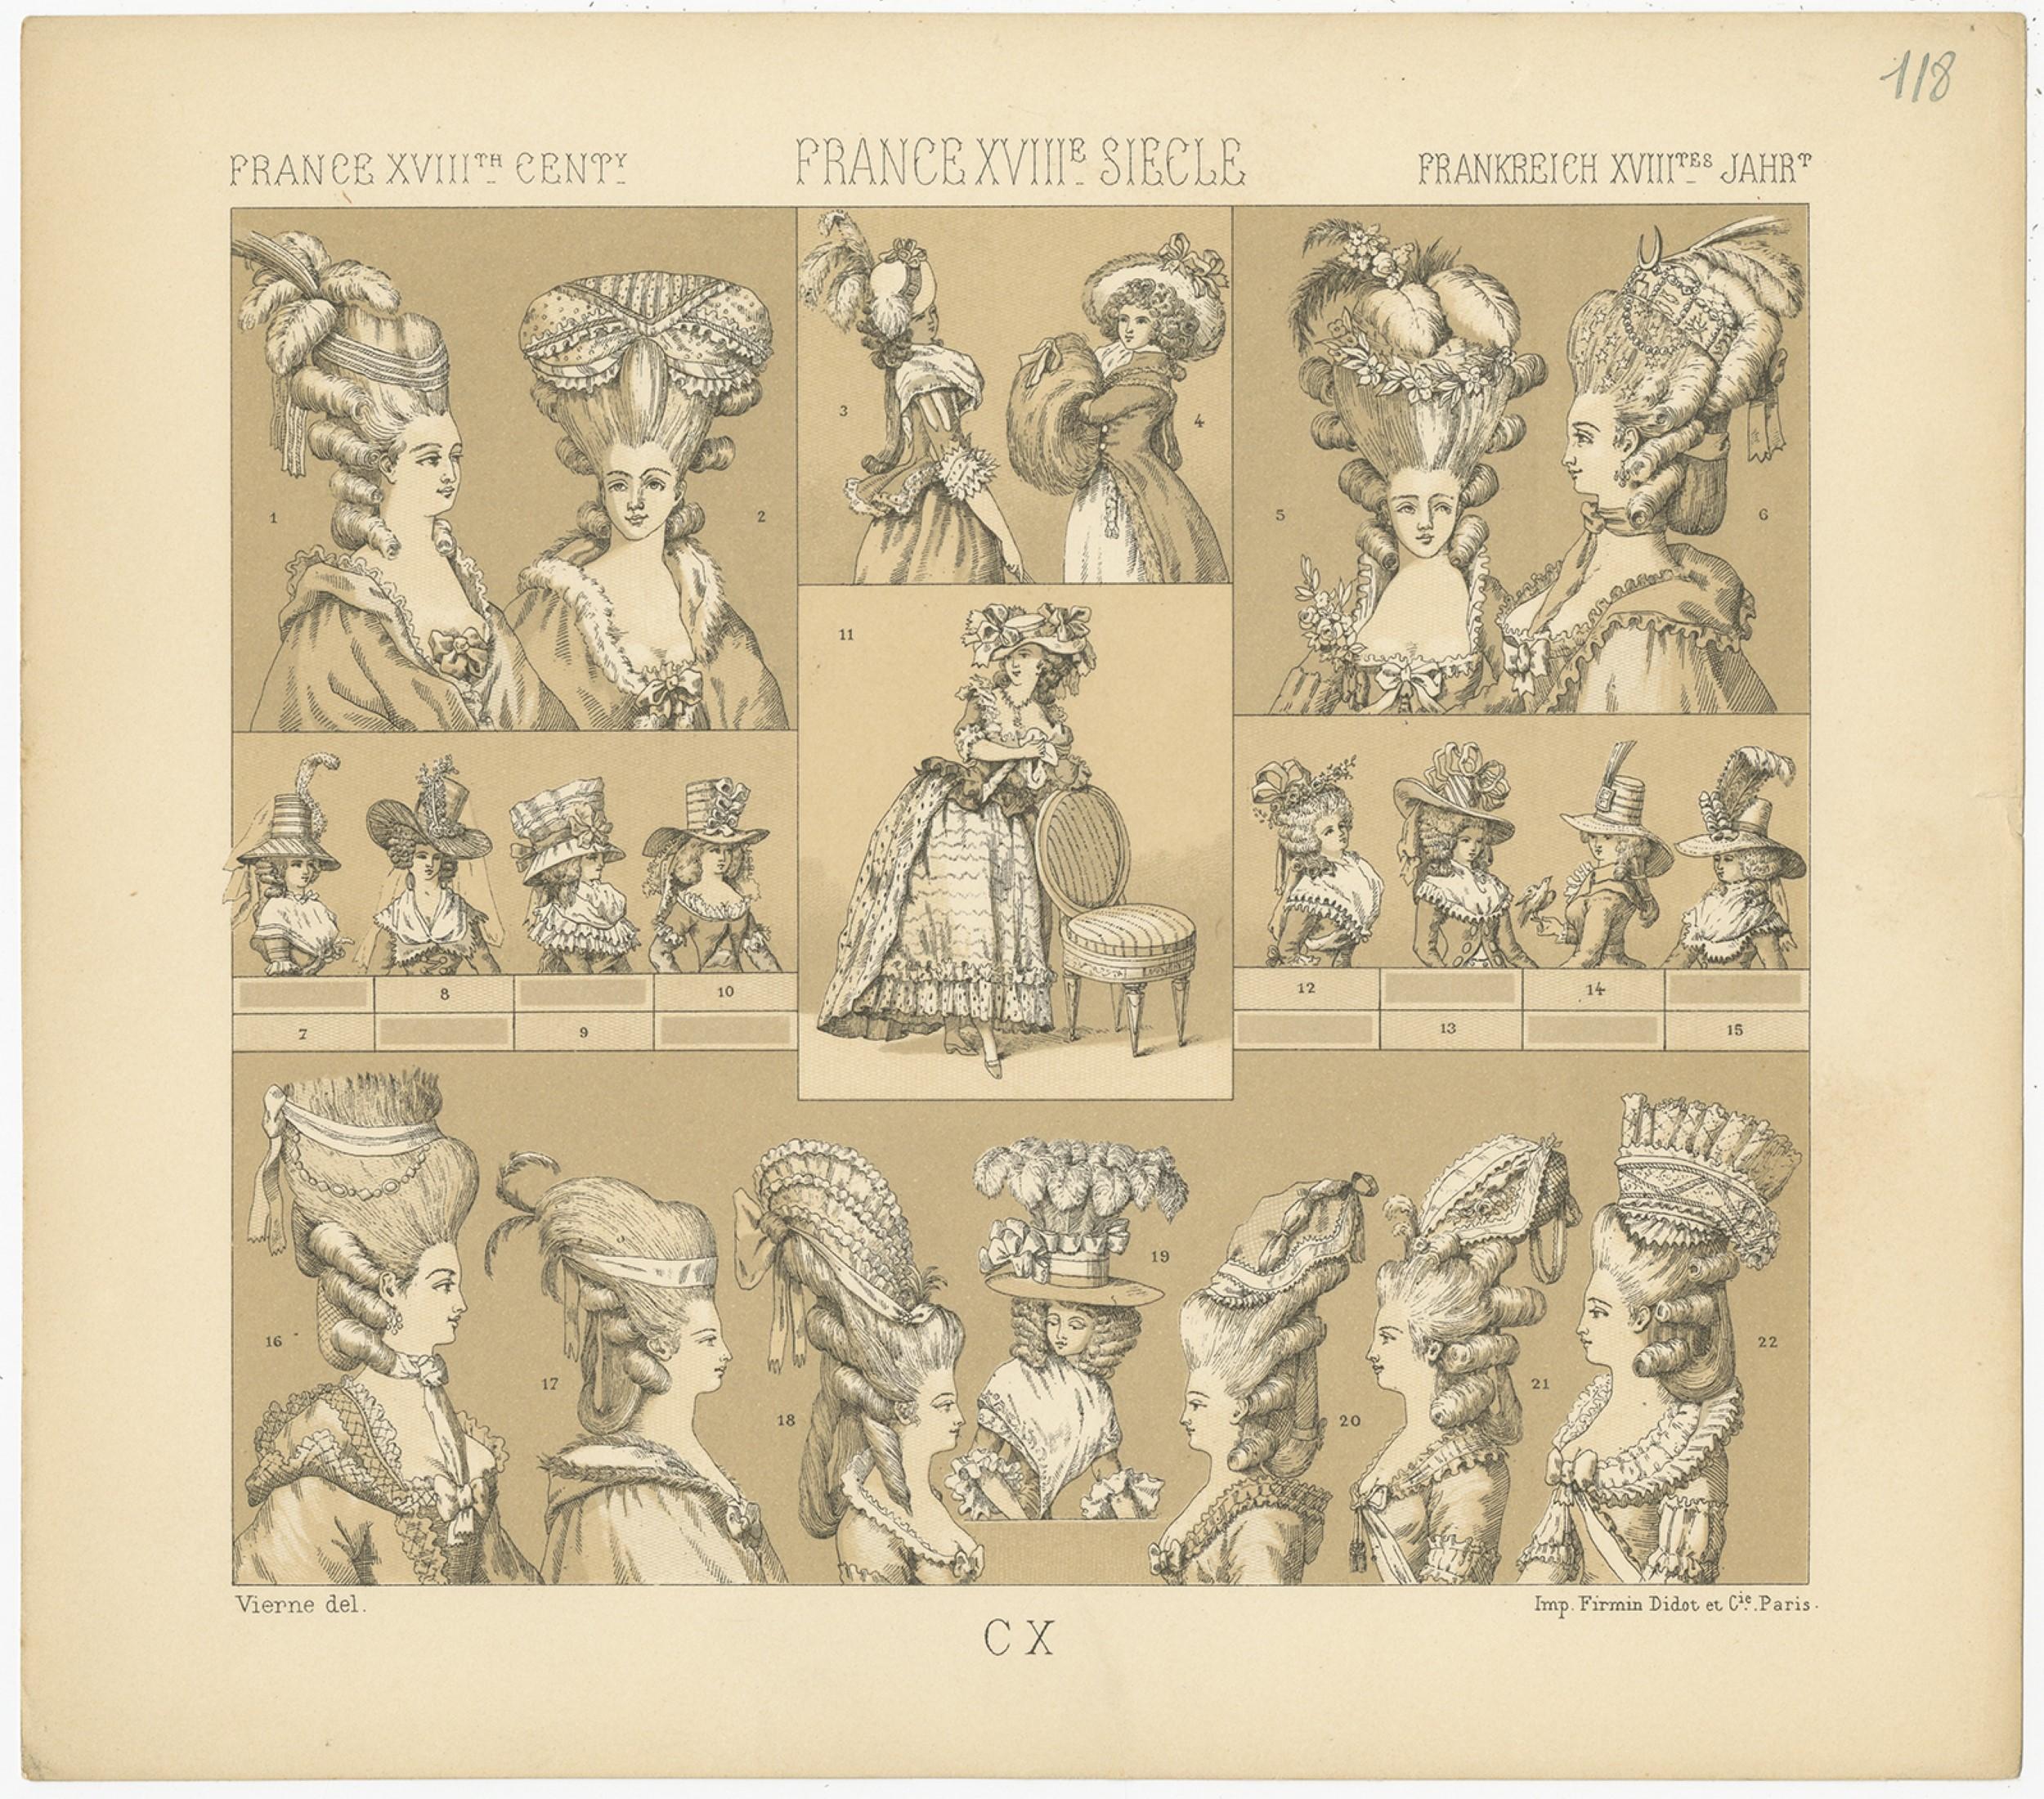 Antiker Druck mit dem Titel 'Frankreich XVIII. Cent - Frankreich XVIIIe, Siecle - Frankreich XVIIItes Jahr'. Chromolithographie von französischen Frauenhüten aus dem 18. Dieser Druck stammt aus 